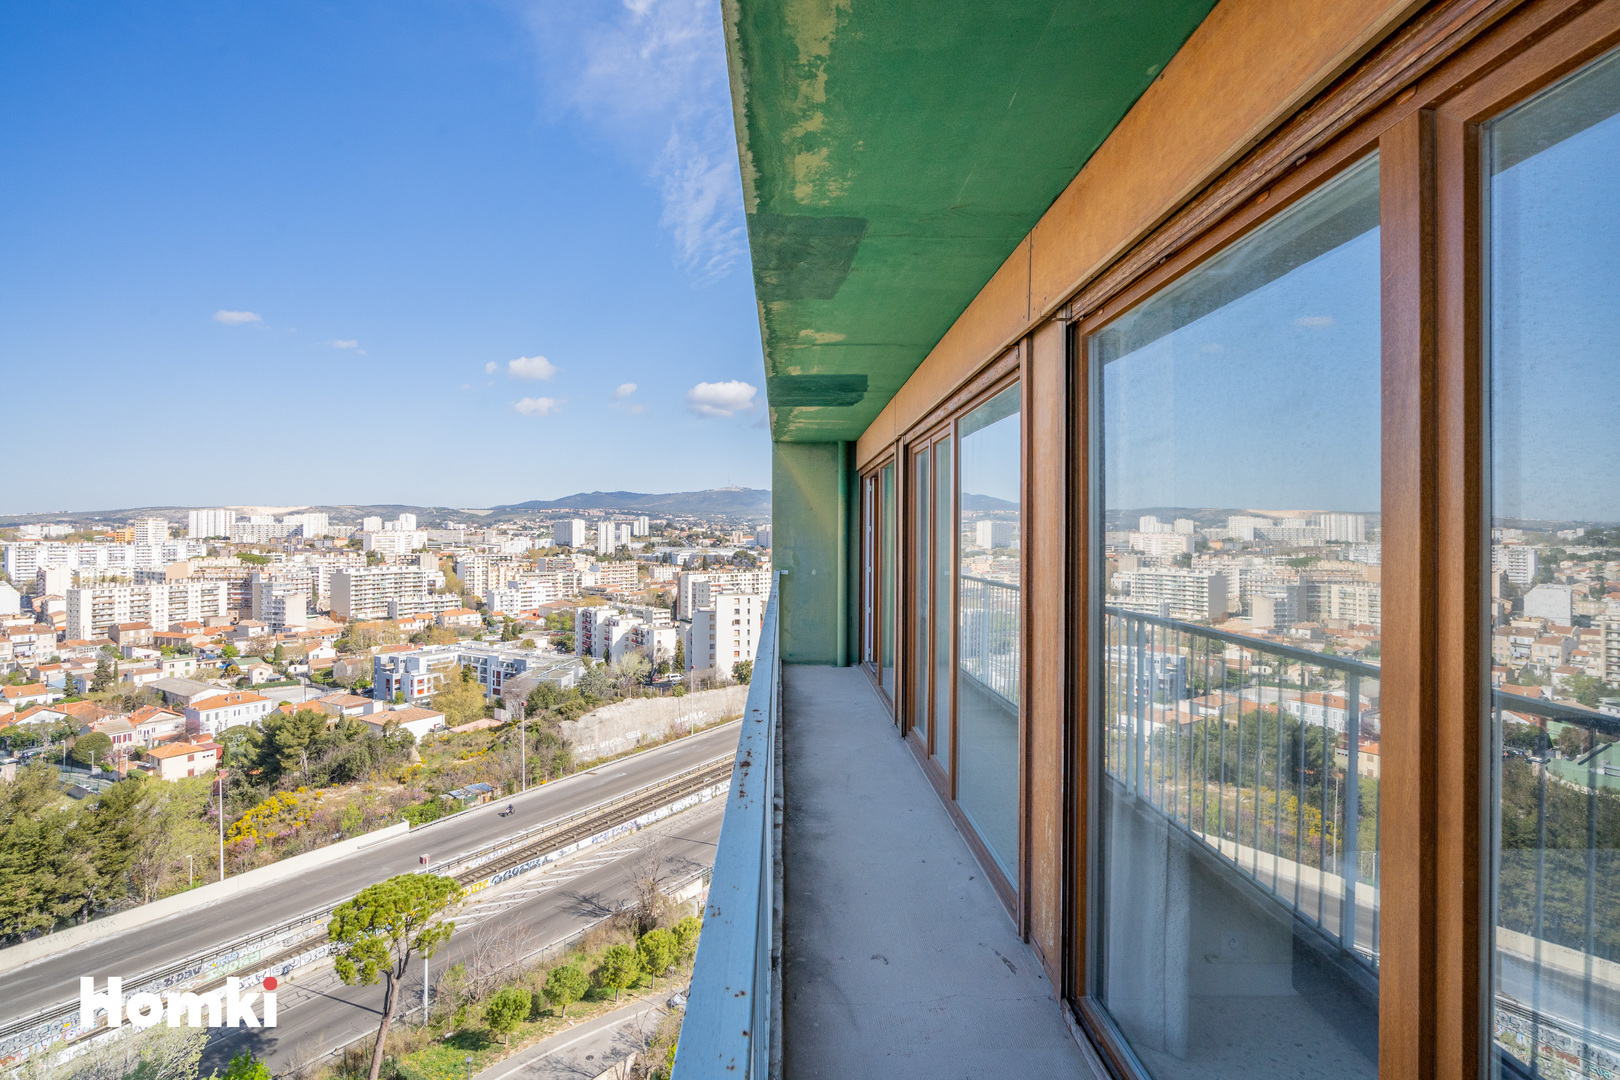 Homki - Vente Appartement  de 87.0 m² à Marseille 13013